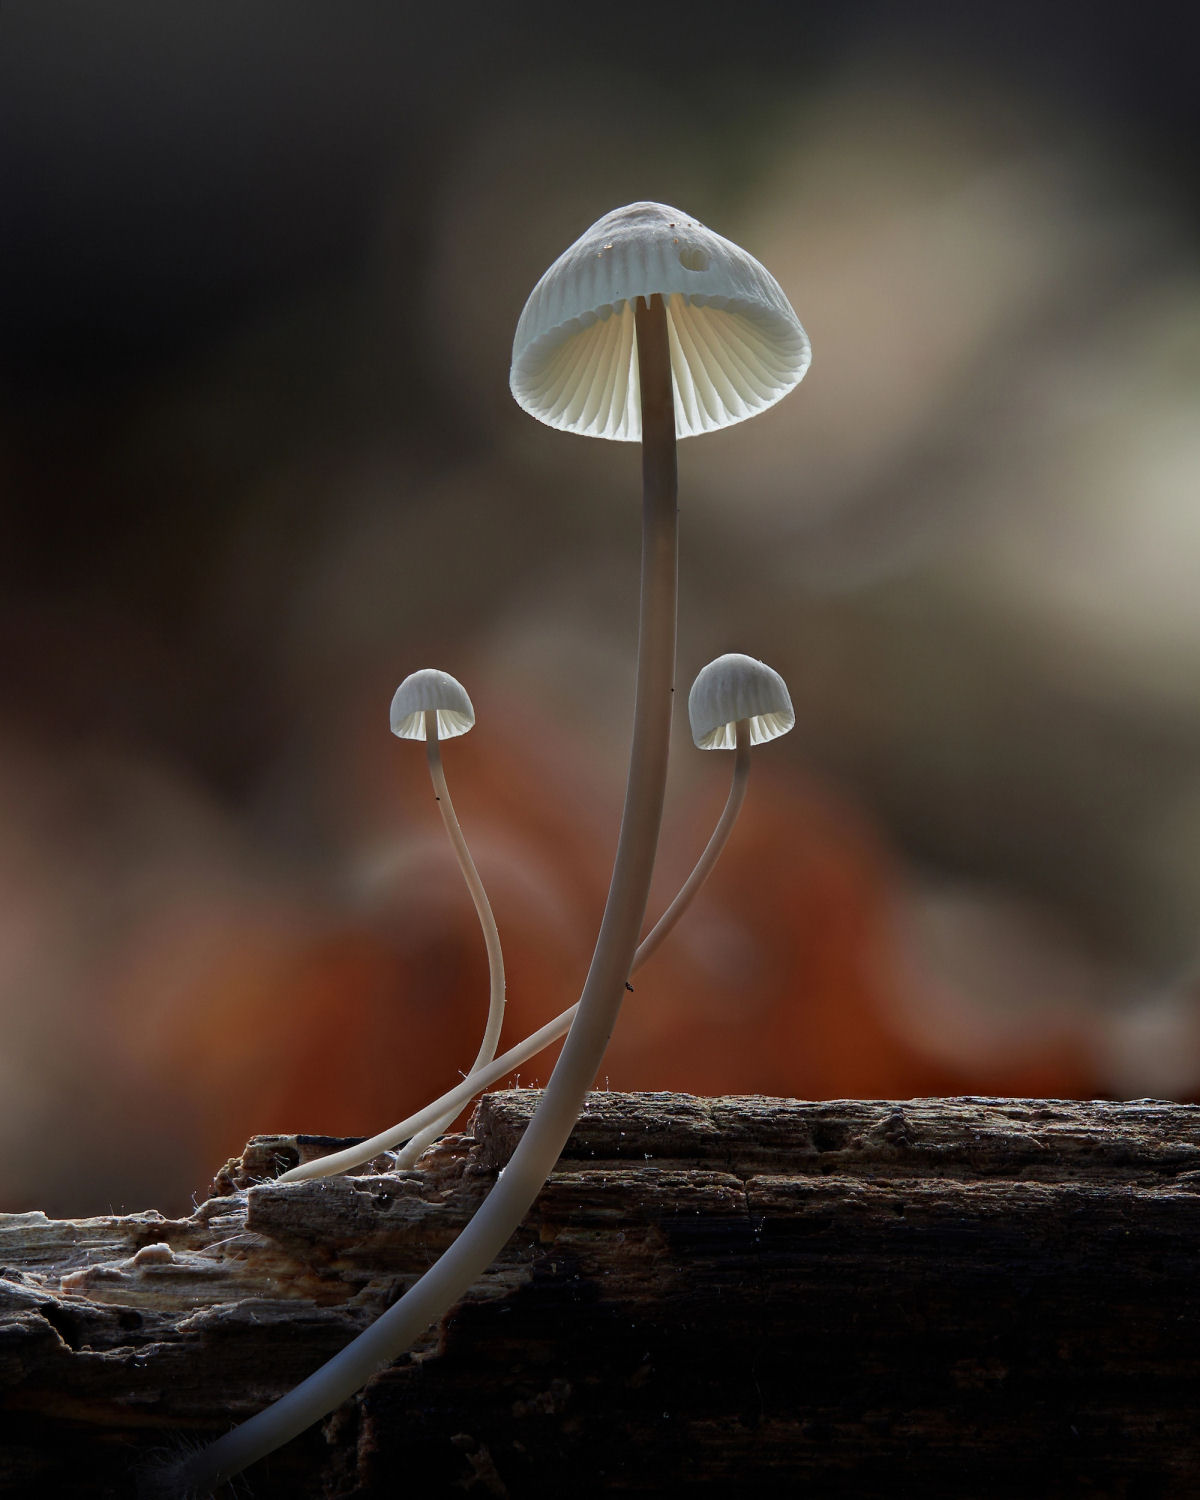 Macrofotografias mostram a espantosa biodiversidade dos fungos 04